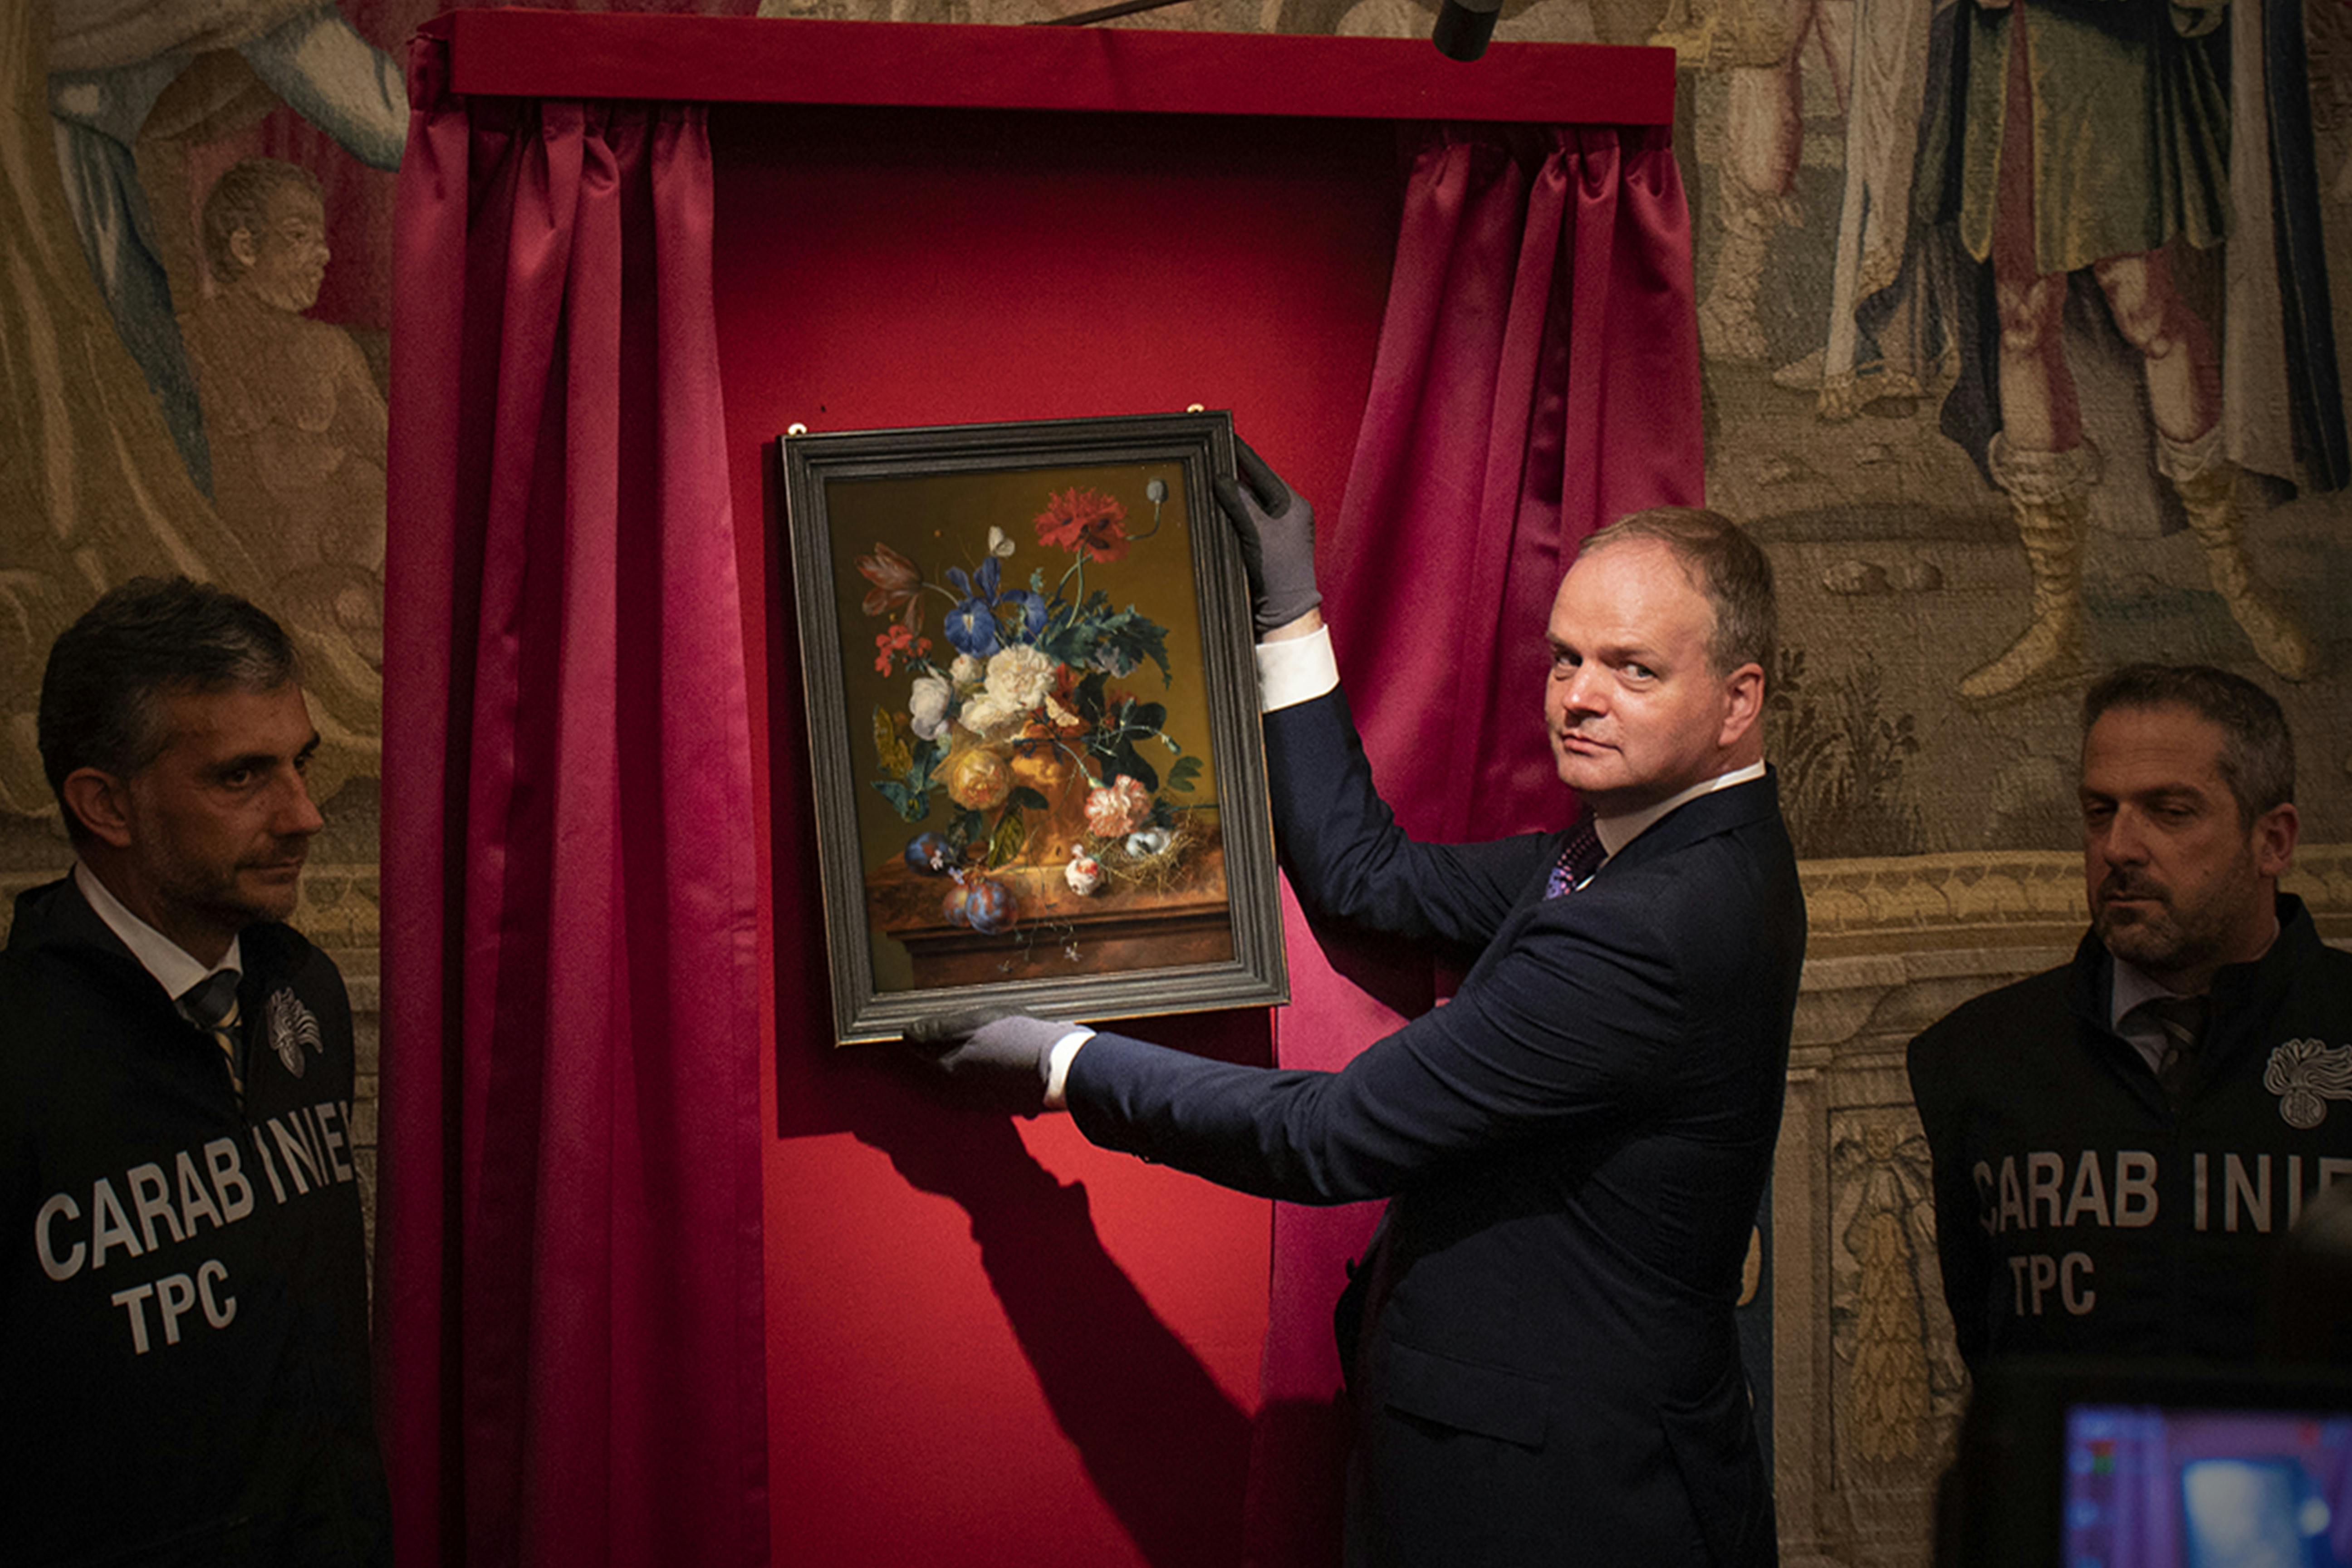 Il “Vaso di Fiori” di Jan van Huysum ritorna a Palazzo Pitti!